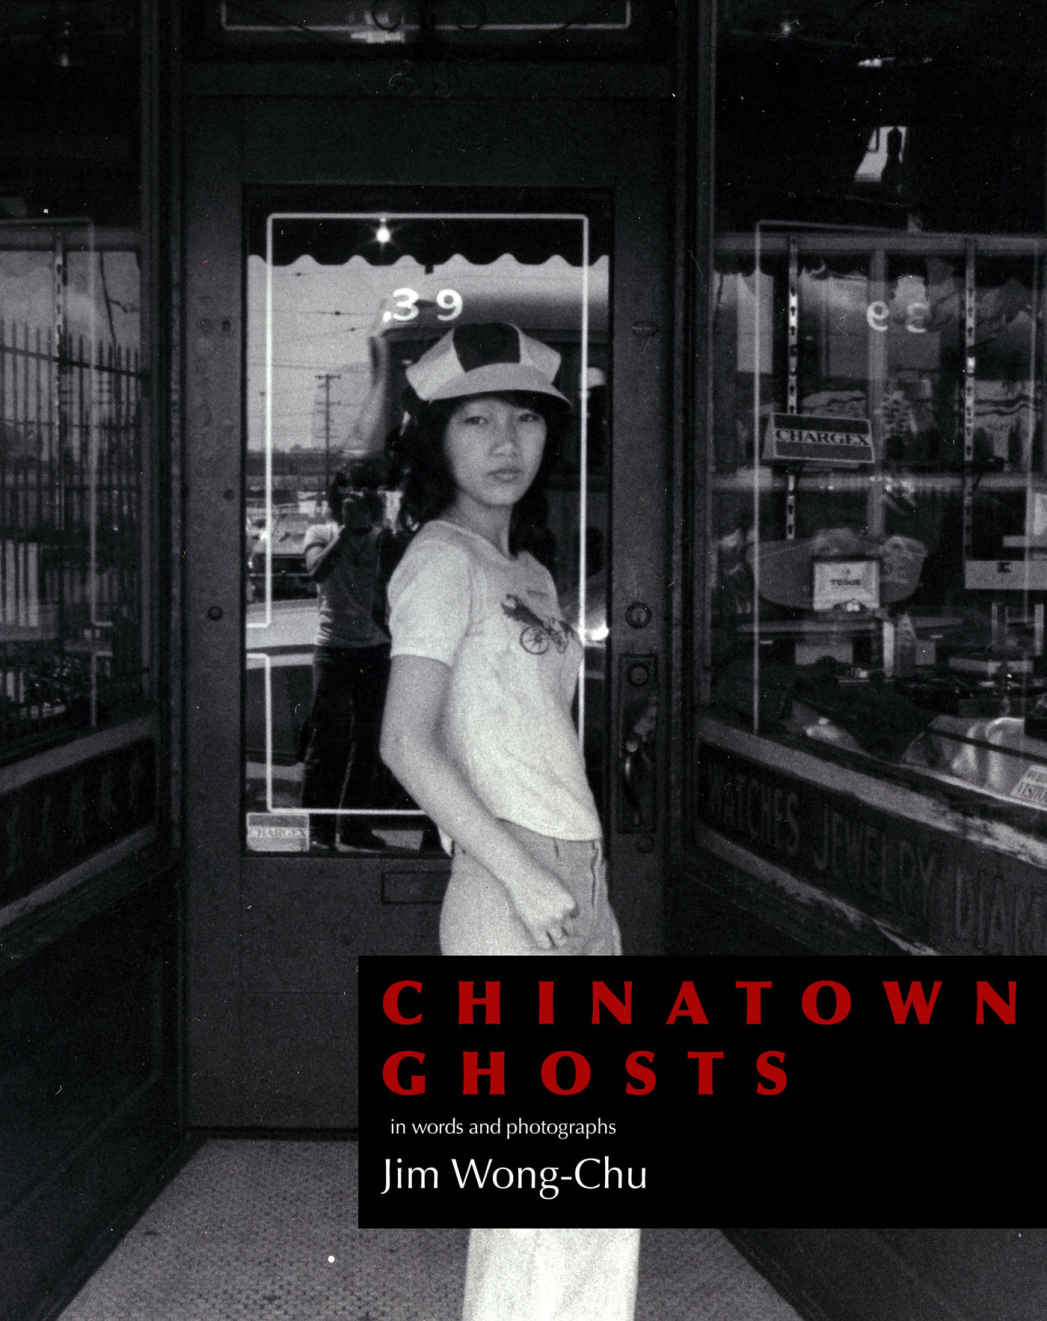 Couverture du recueil de poésie Chinatown Ghosts de Jim Wong-Chu publié la première fois en 1986 - Photo : Édition 2018